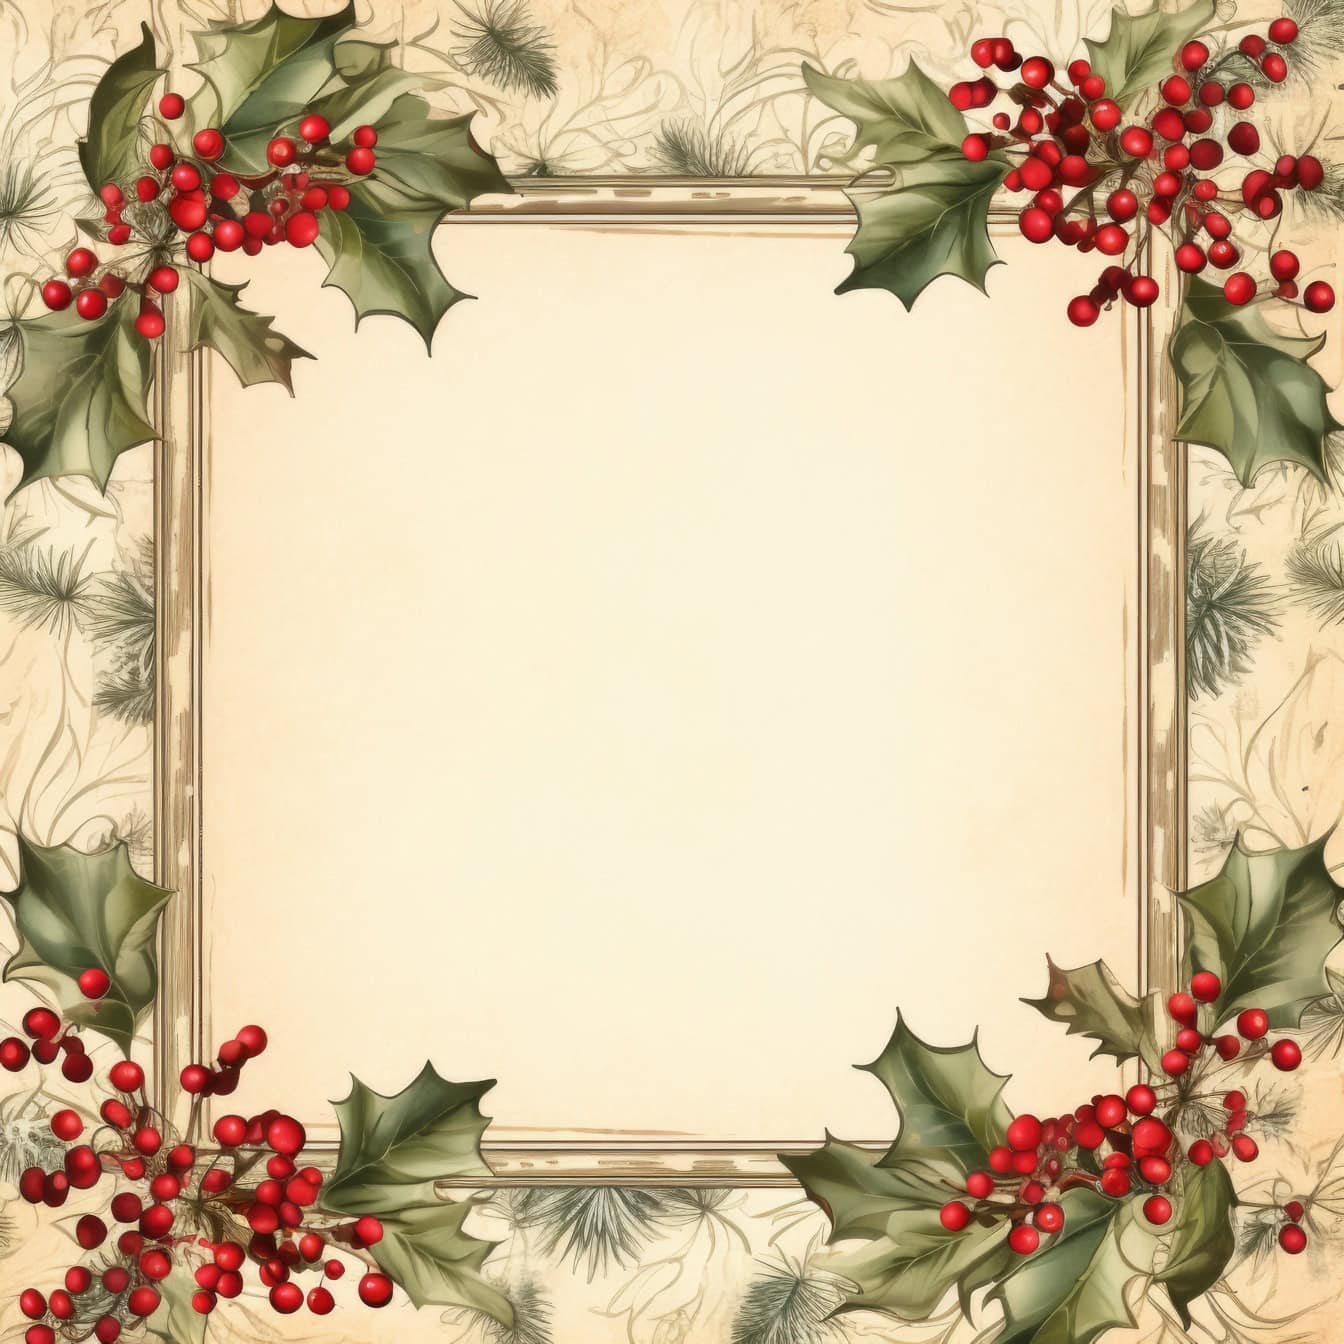 Jule lykønskningskort skabelon i gammel stil med firkantet ramme med røde bær og blade